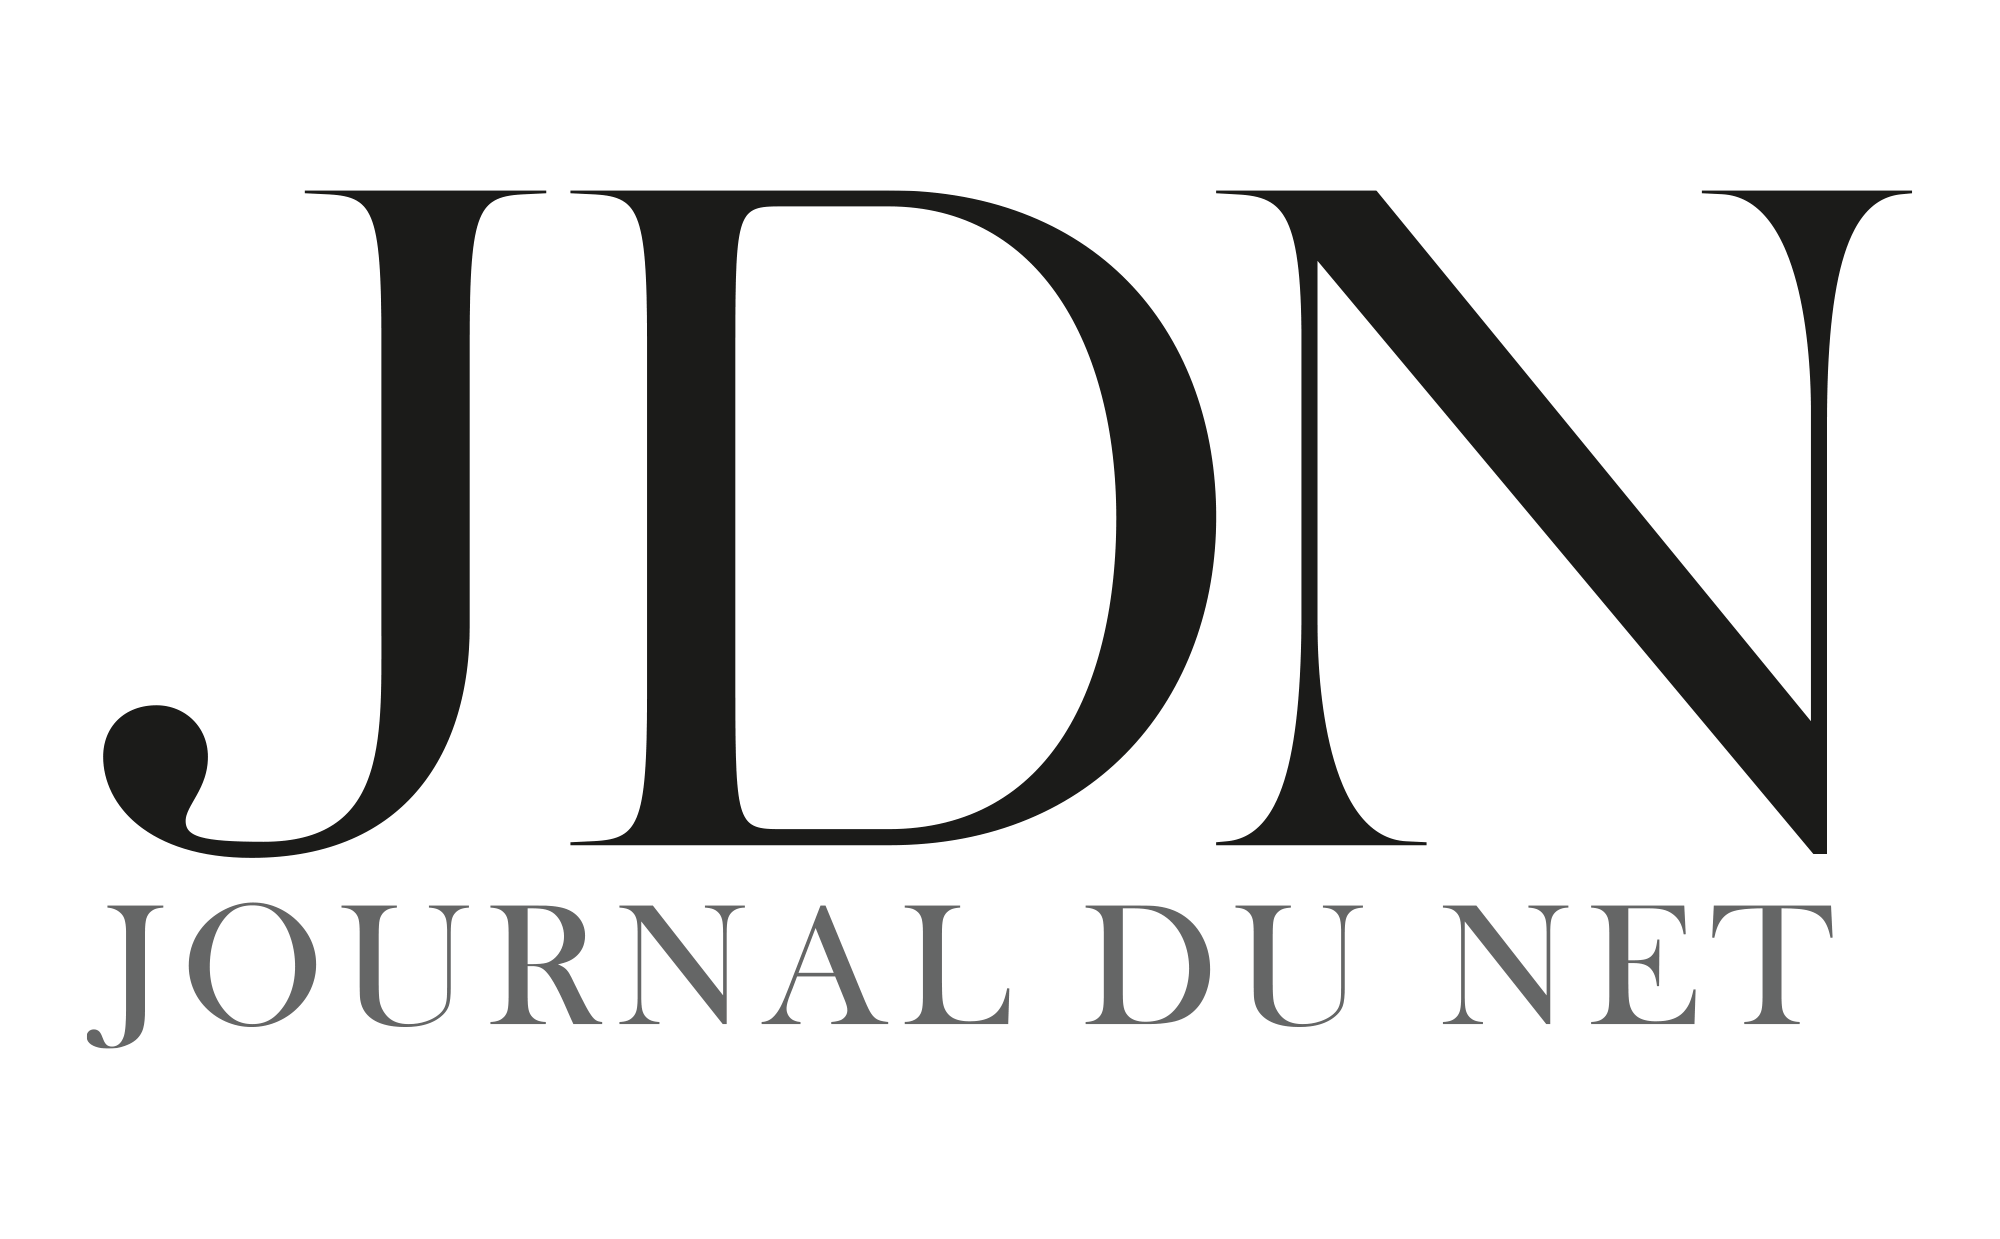 journaldunet.com